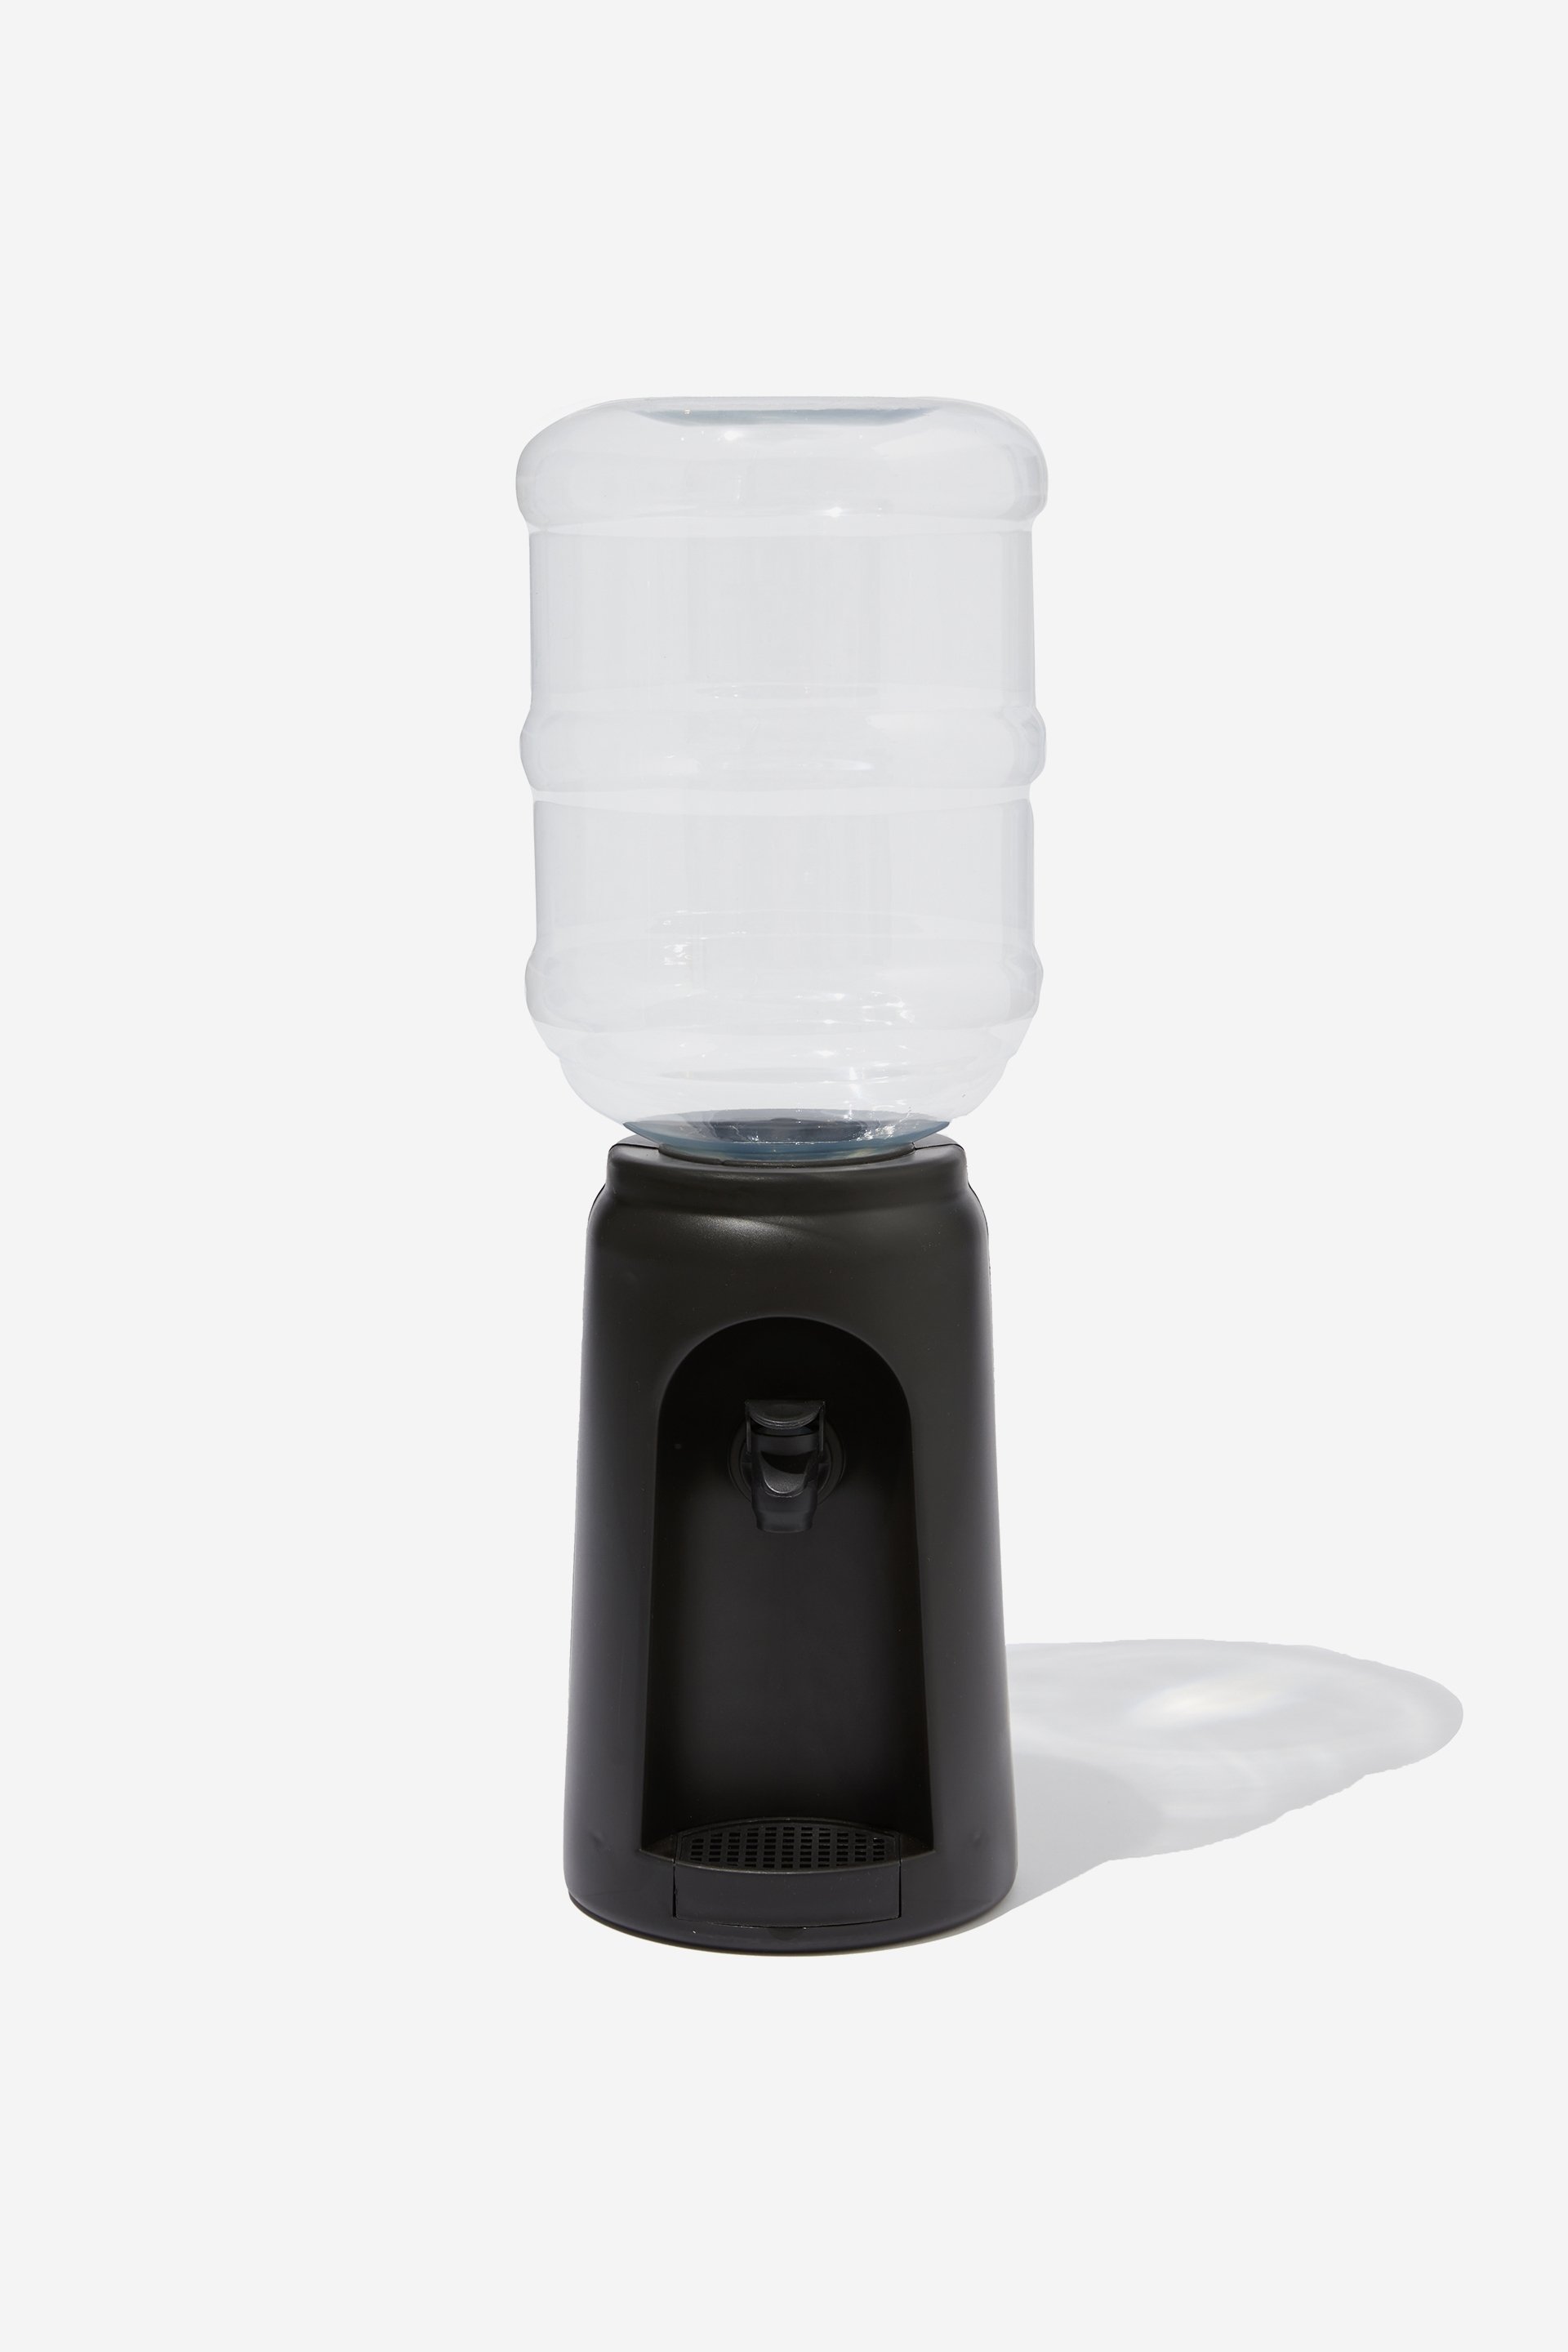 Typo - Desktop Water Cooler 3.0 - Black